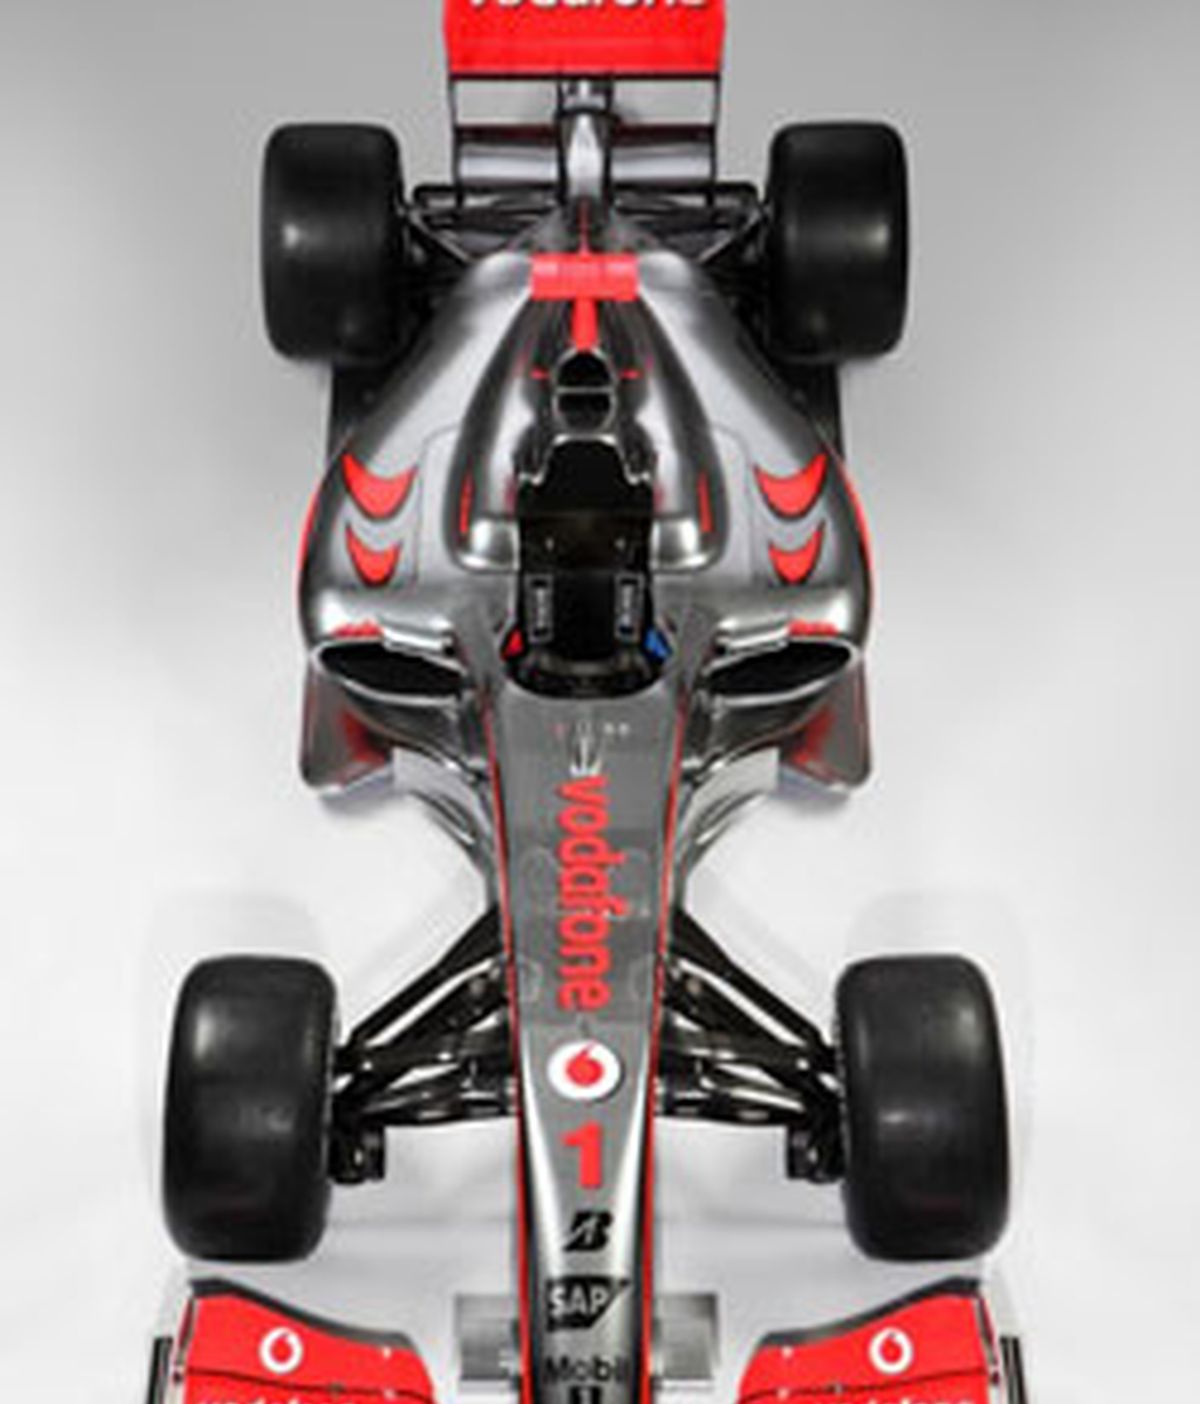 El piloto español Pedro Martínez de la Rosa ha realizado los primeros giros en el nuevo McLaren MP4-24 en el Autódromo de Algarve en Portugal.